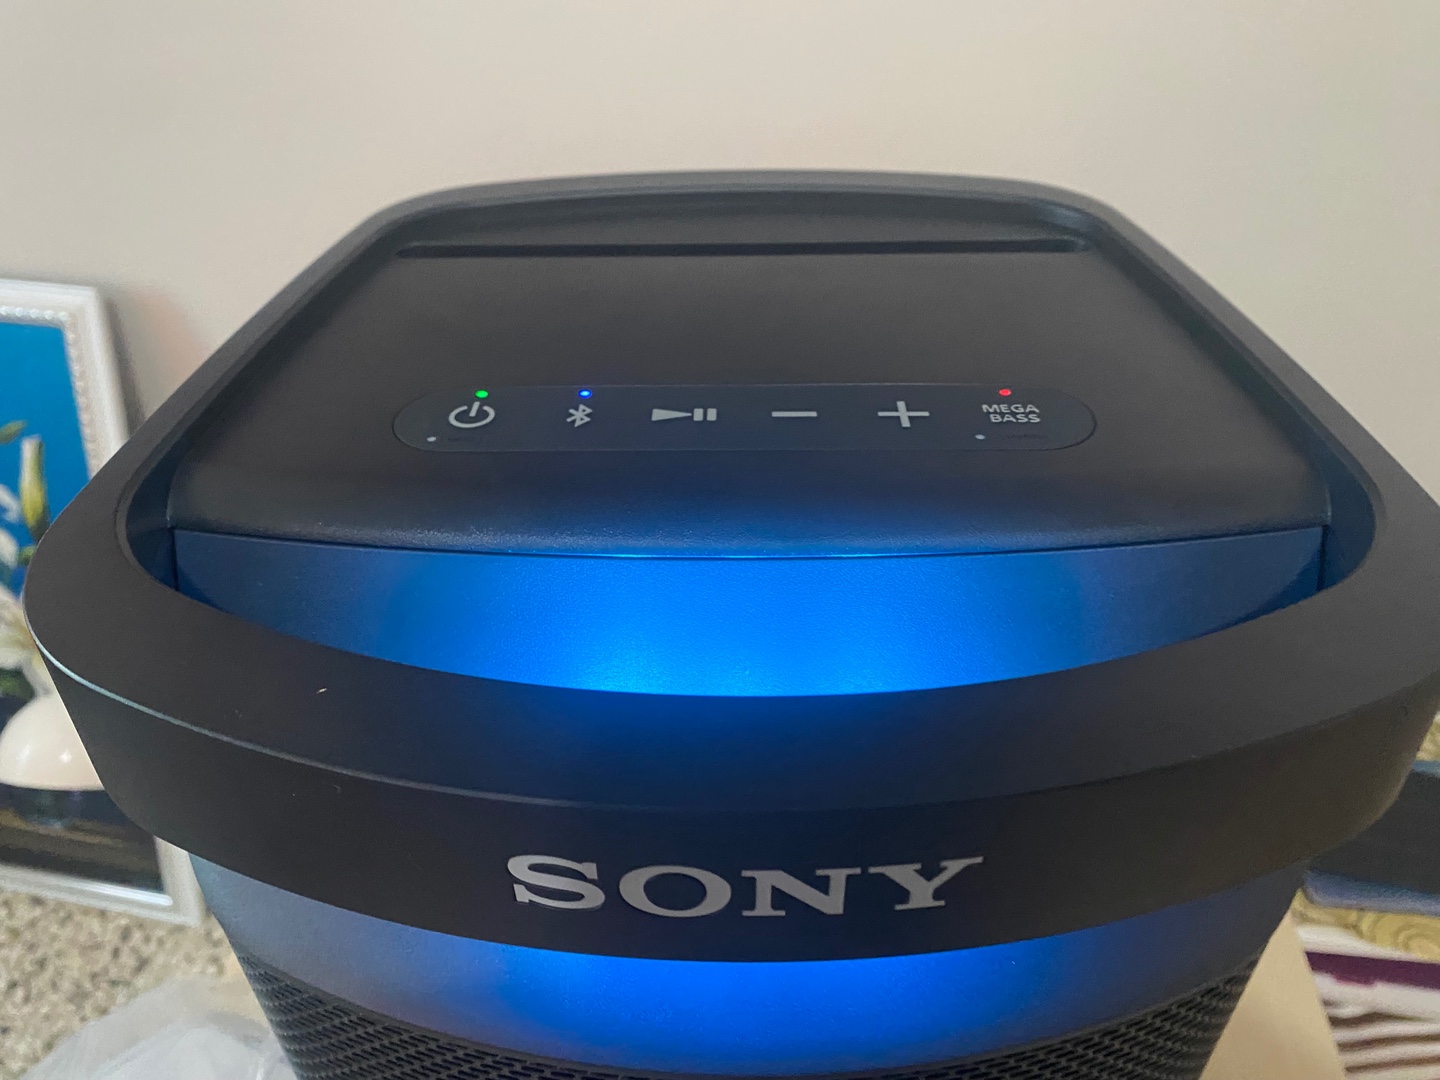 camaras y audio - Bocinas Sony Original recargable hasta 20 horas de música continua 